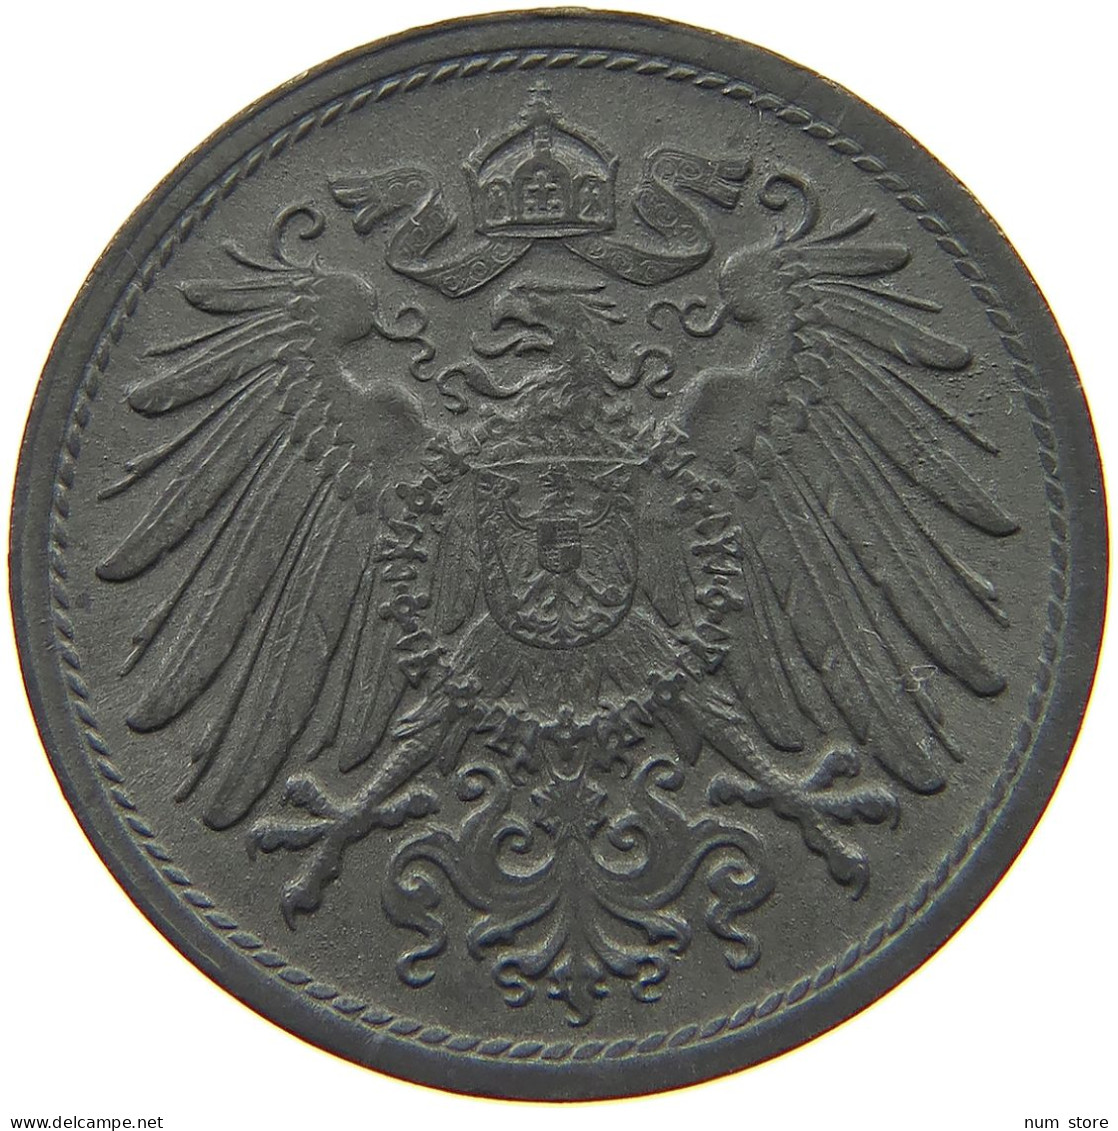 DEUTSCHES REICH 10 PFENNIG 1919  #c084 0847 - 10 Renten- & 10 Reichspfennig